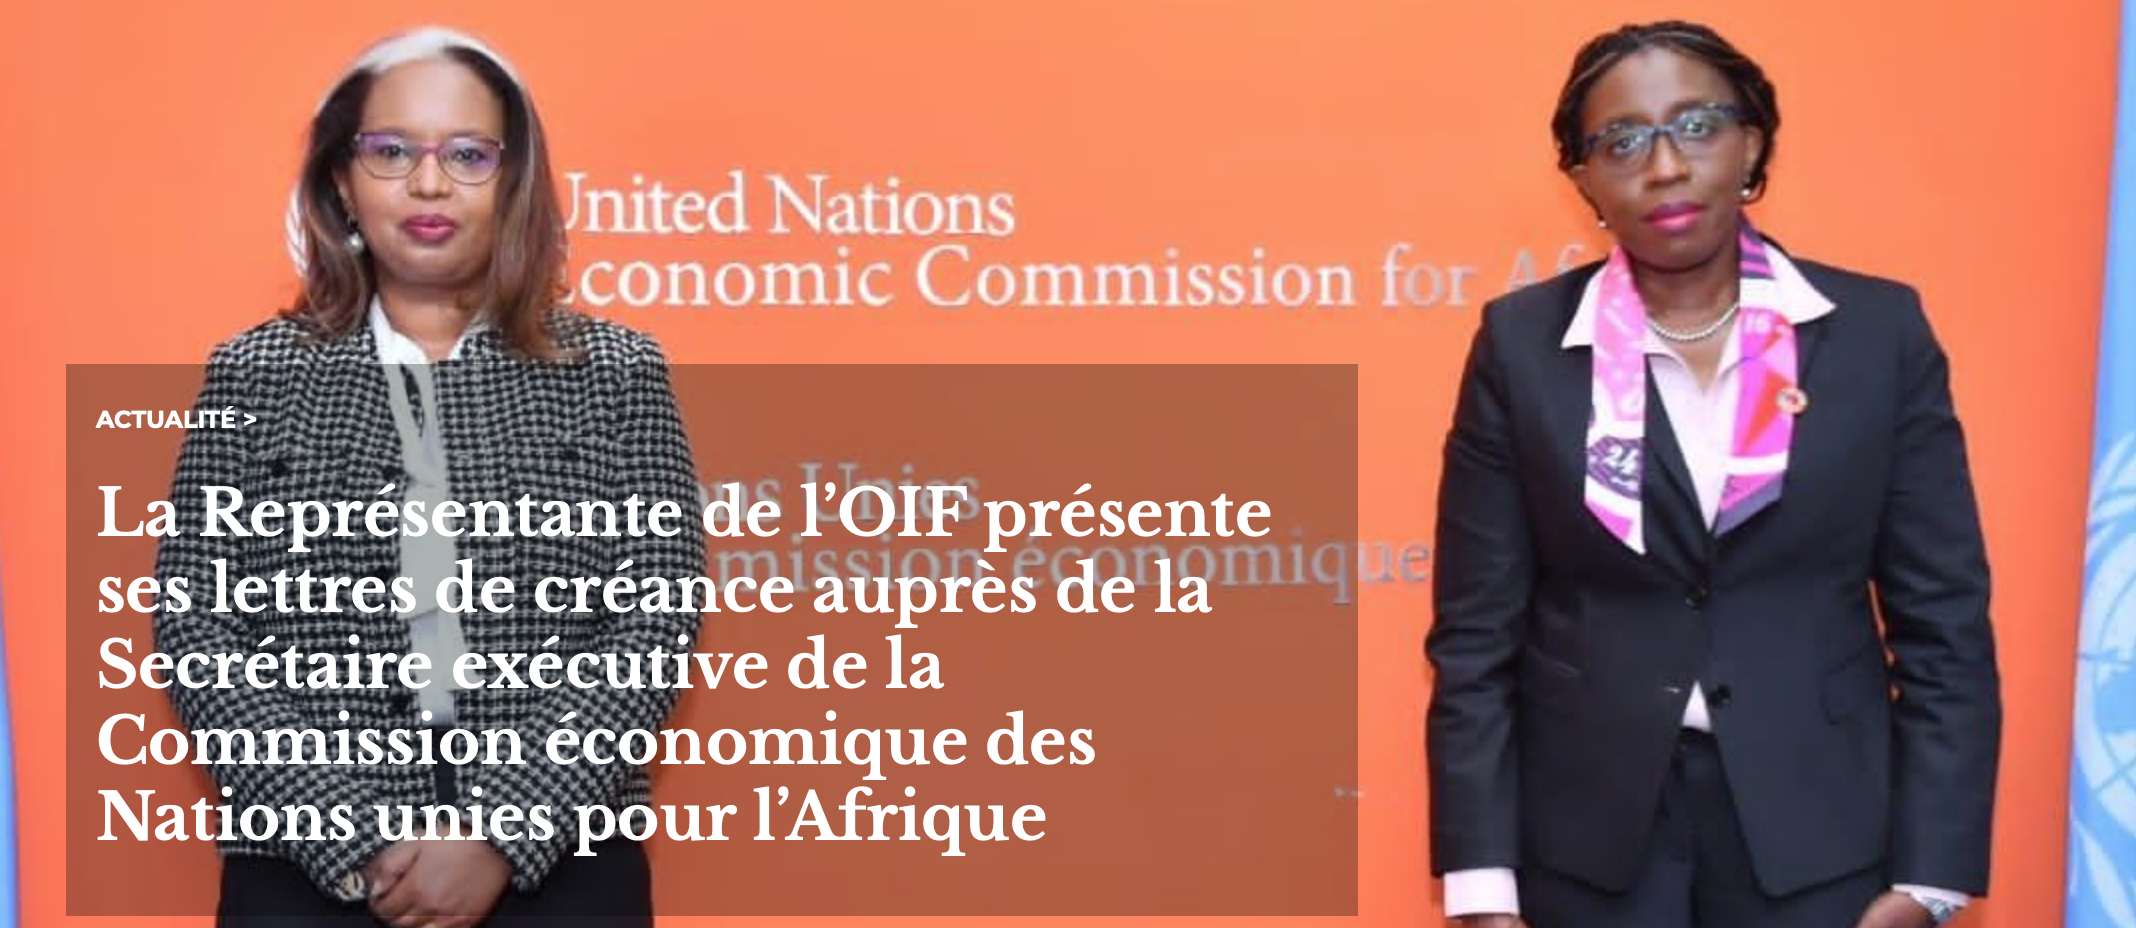 La représentante permanente de l’OIF présente ses lettres de créance auprès de la Secrétaire exécutive de la Commission économique des Nations Unies pour l’Afrique